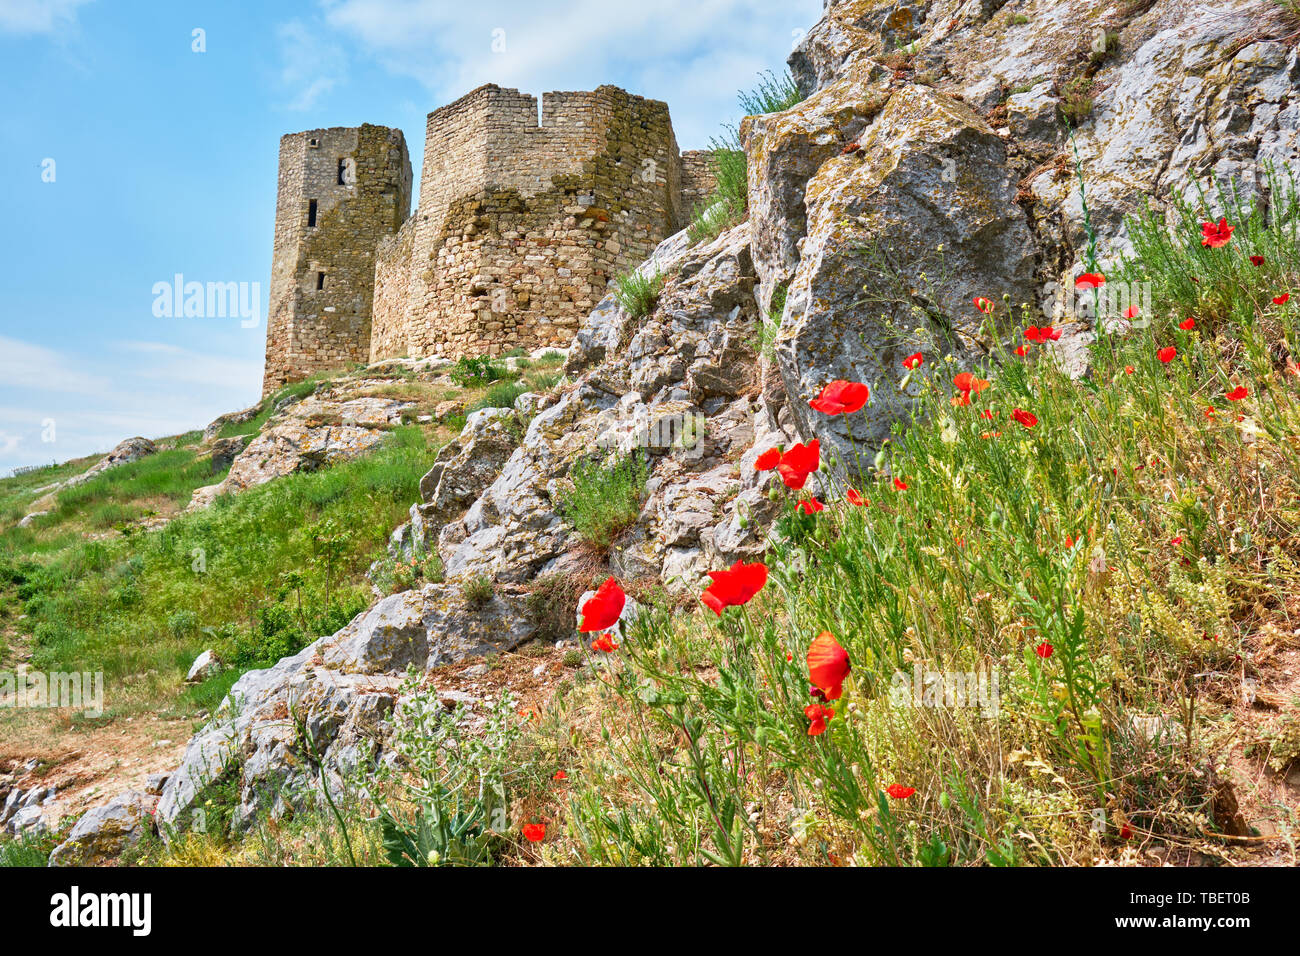 Ruinen der Enisala Festung mit roter Mohn in der Nähe der Wände. Häufig als Heracleea Festung, dies ist ein 12.-14. Jahrhundert, mittelalterliche Festung bezeichnet Stockfoto